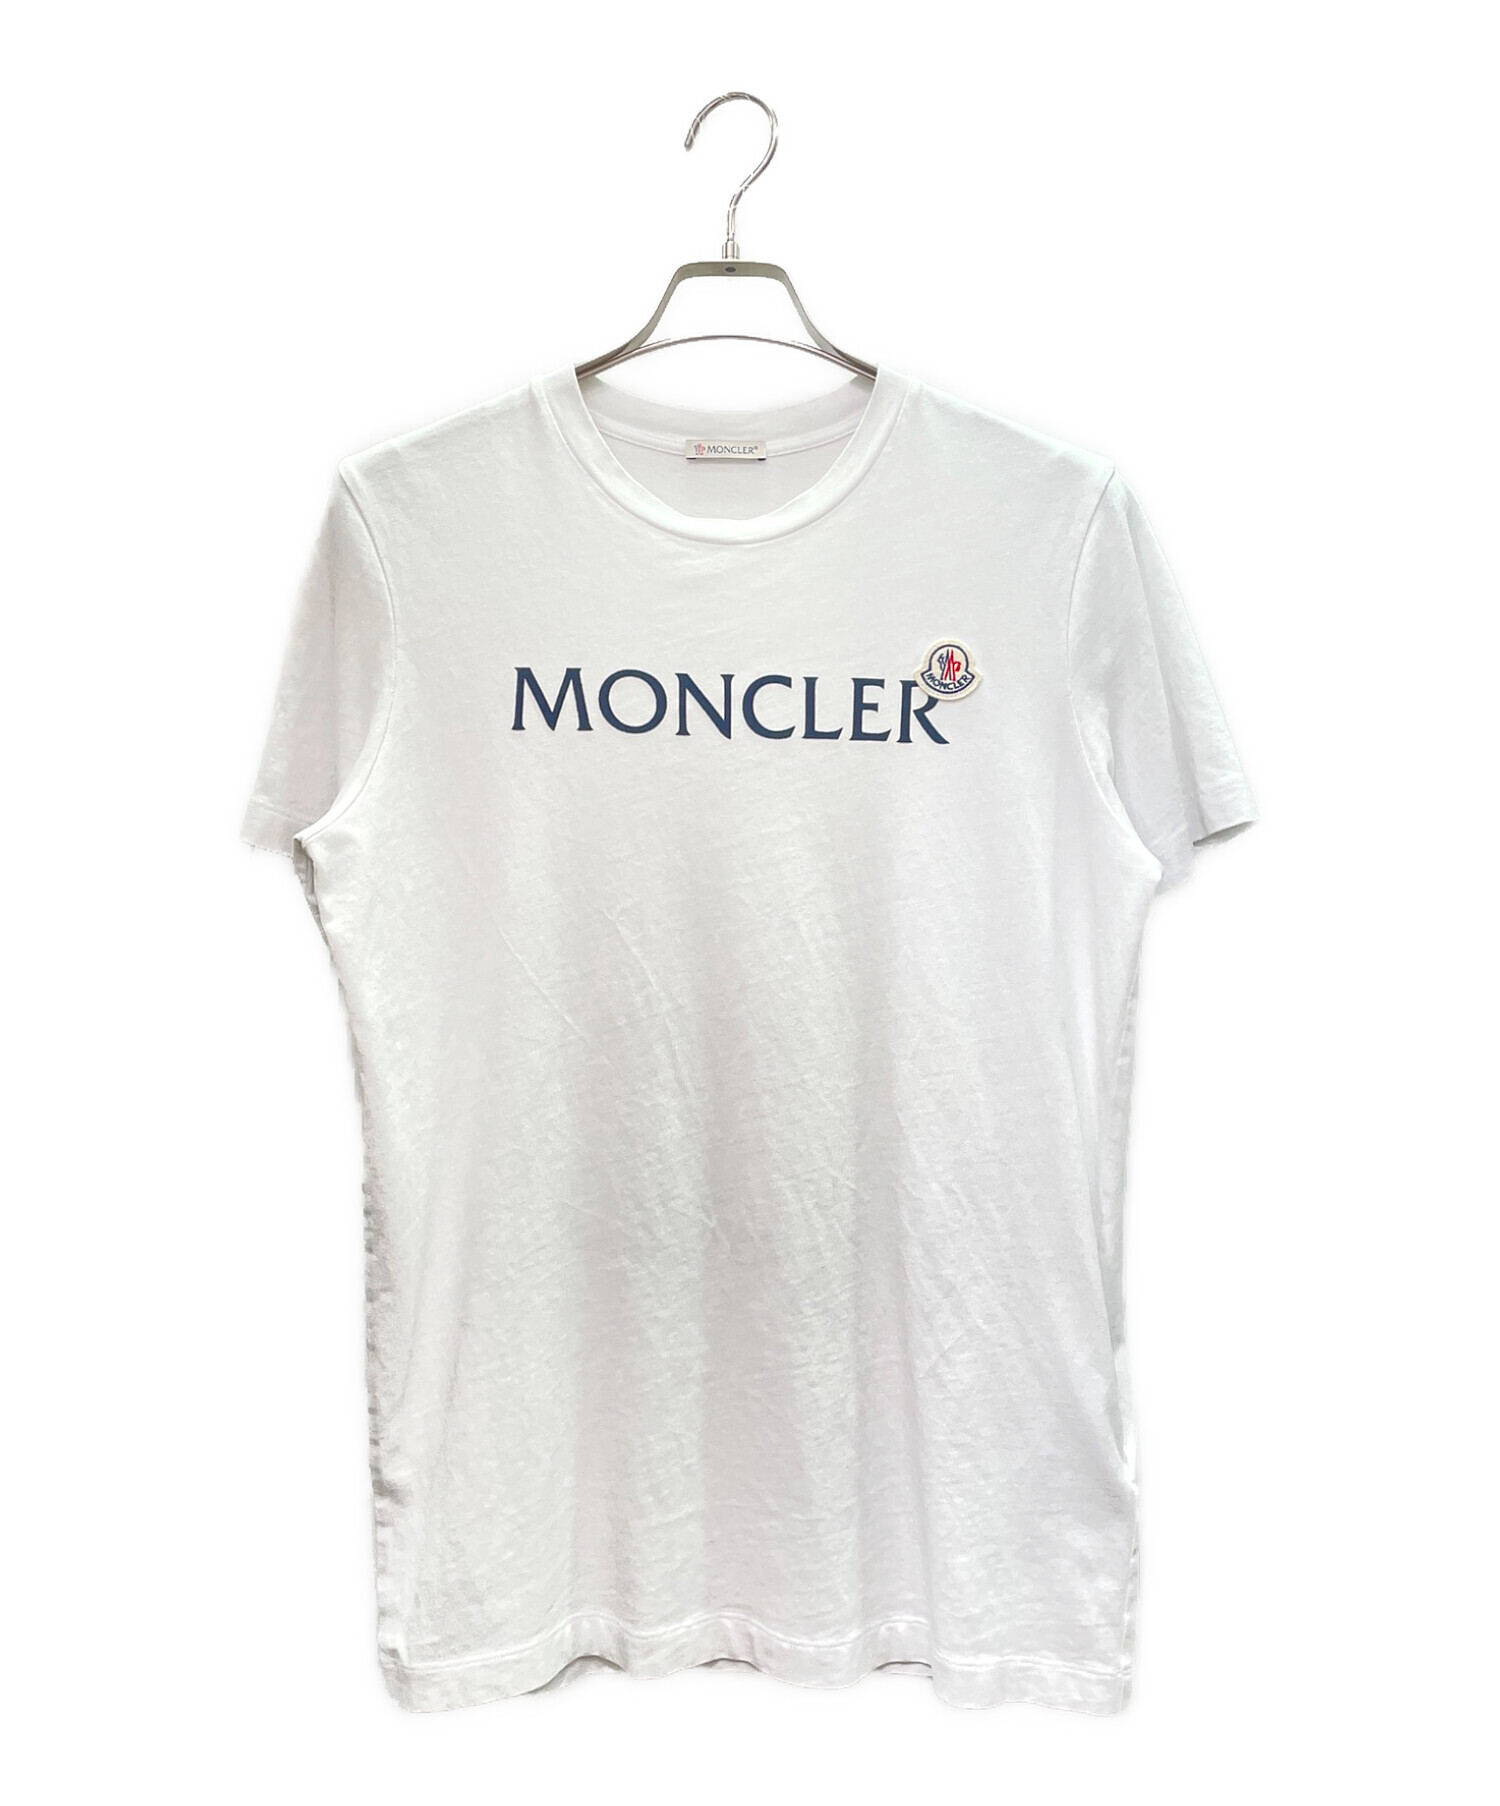 MONCLER (モンクレール) ワッペン ロゴ プリントTシャツ ホワイト サイズ:S